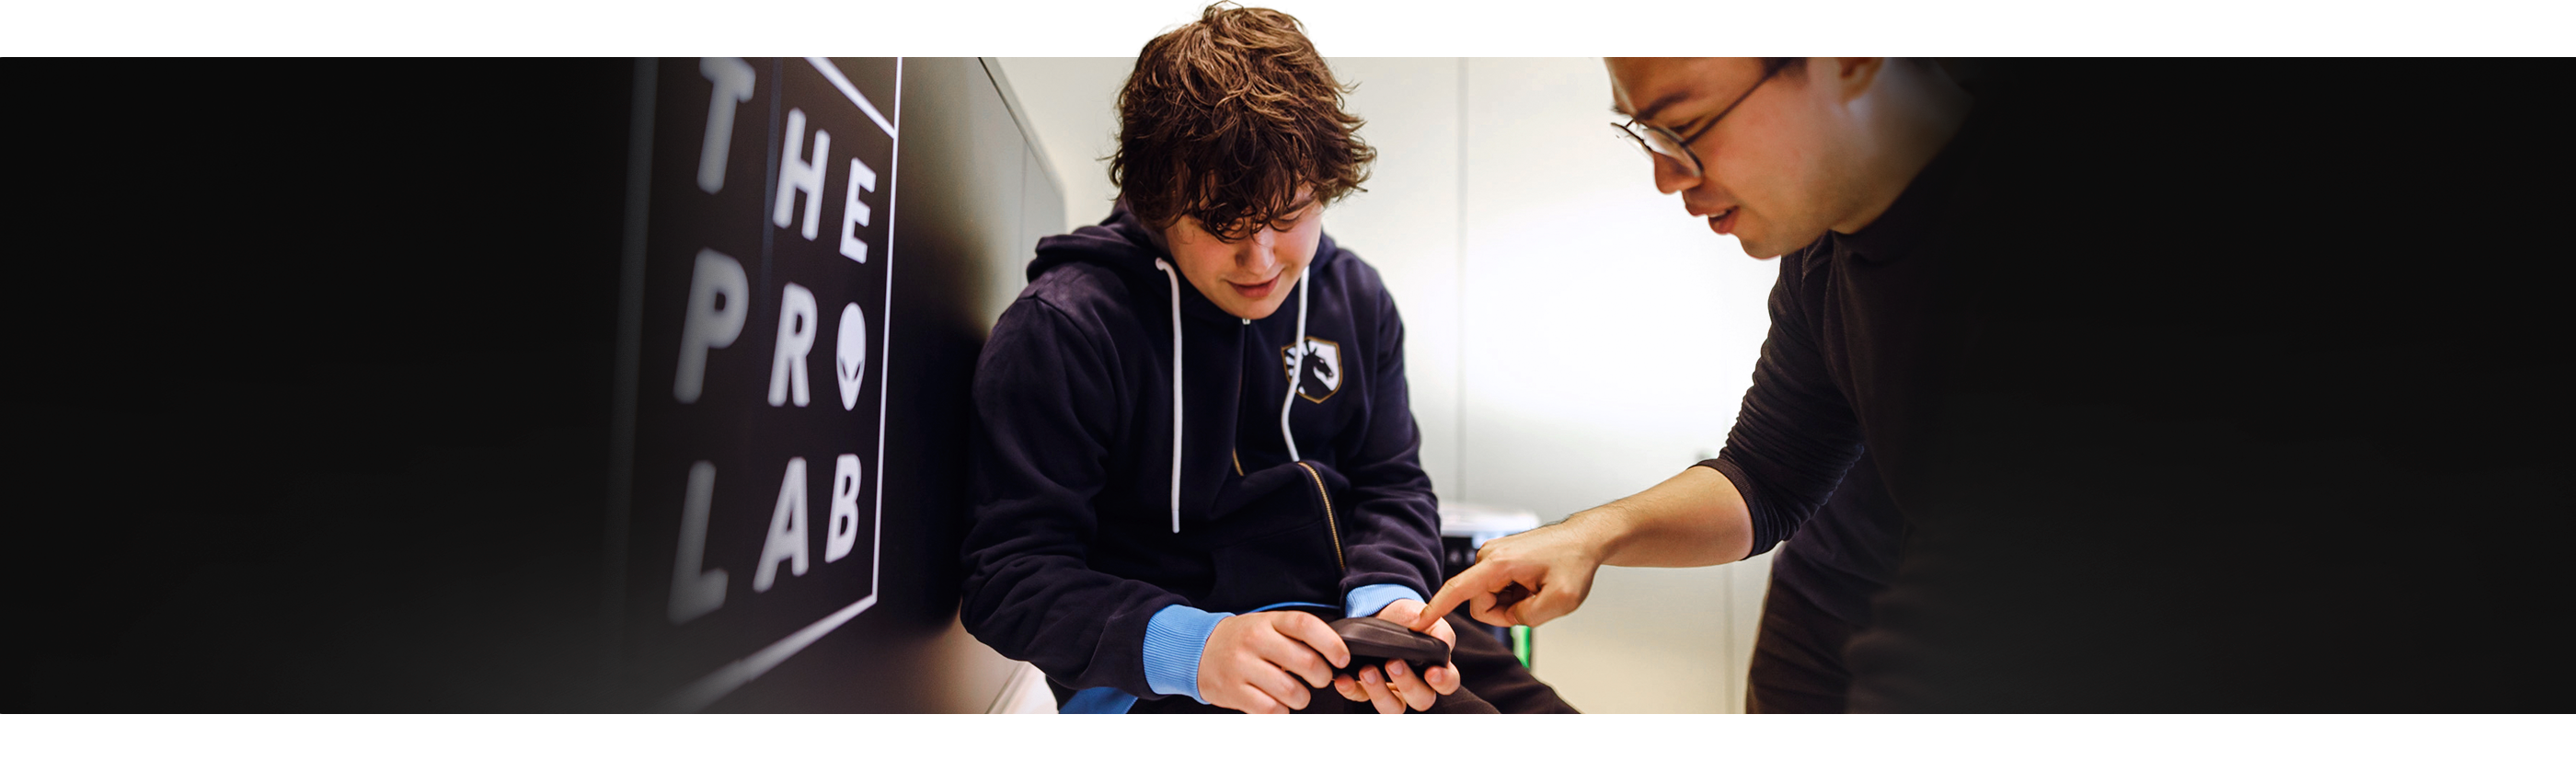 Dell Alienware Proワイヤレス ゲーミング マウスを持っている少年と、横で製品を指さしている男性。